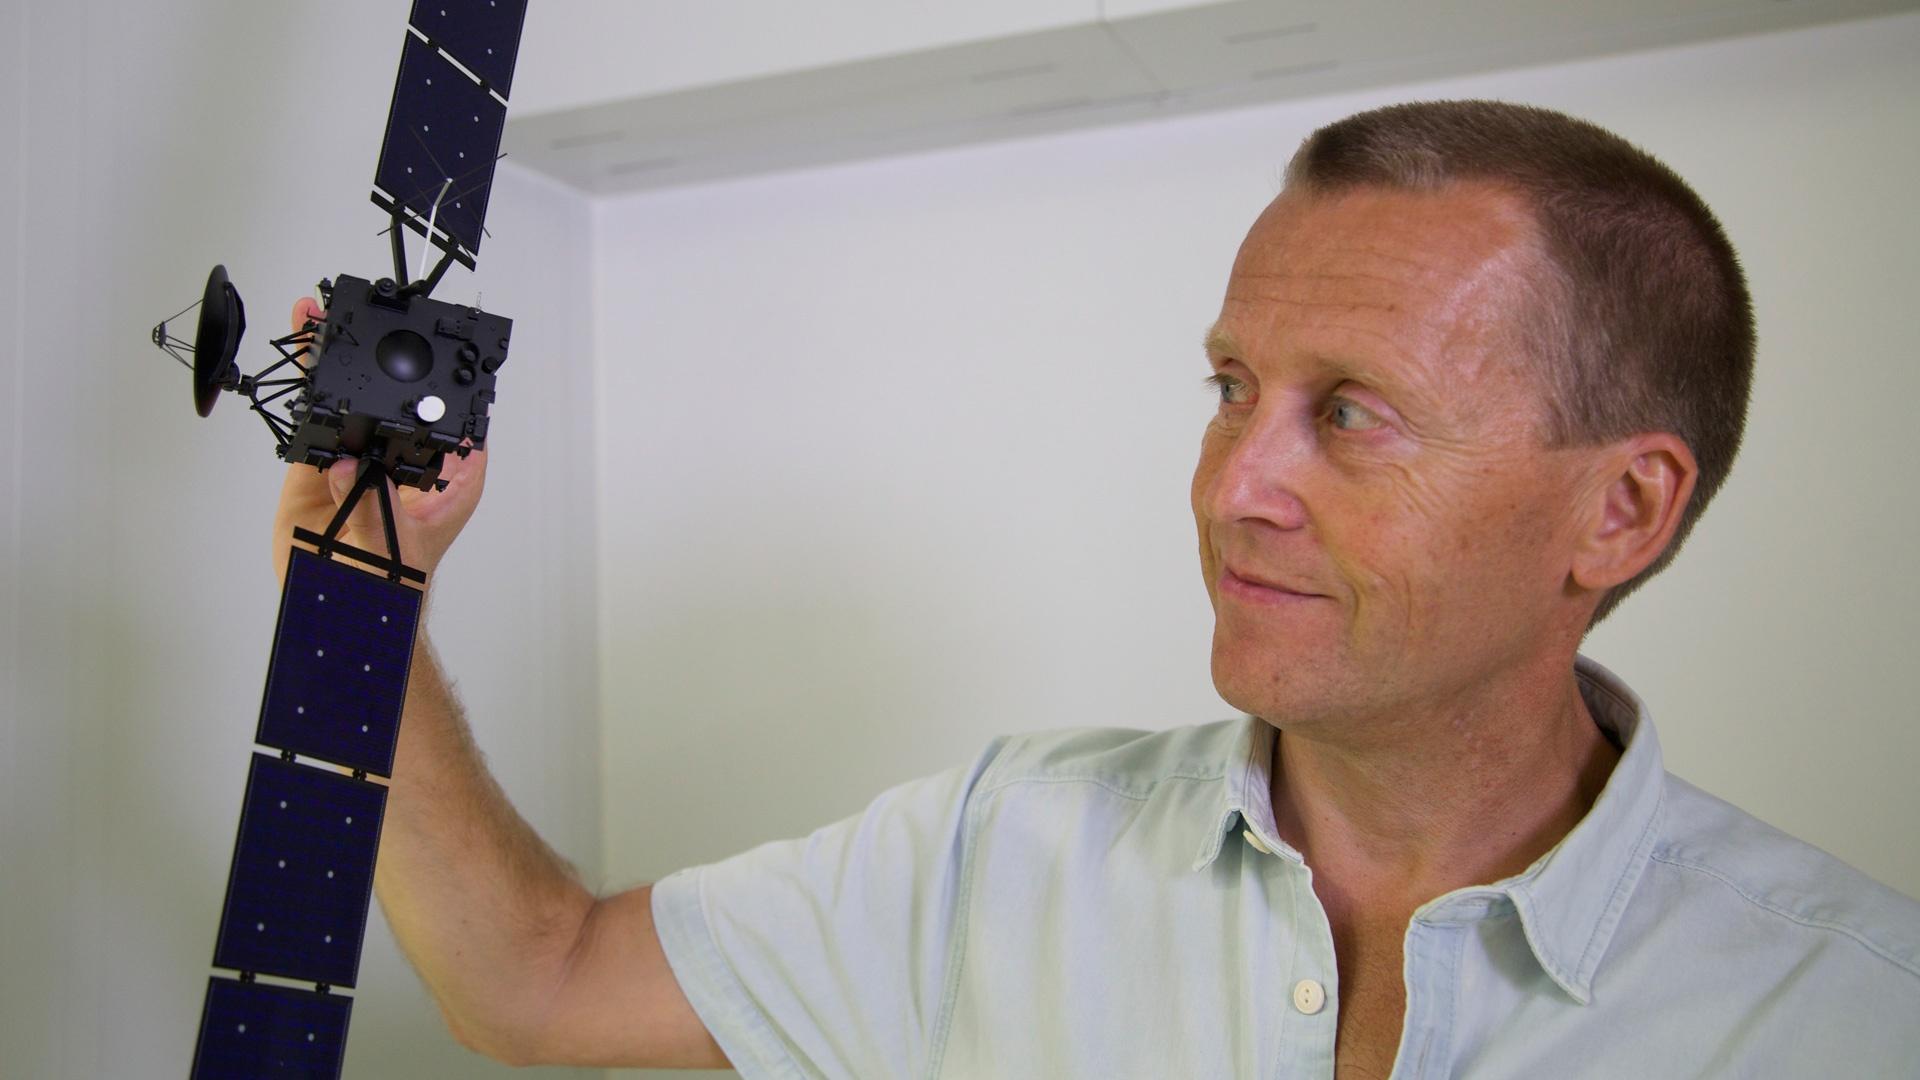 Dr. Holger Sierks holding a model of the Rosetta orbiter